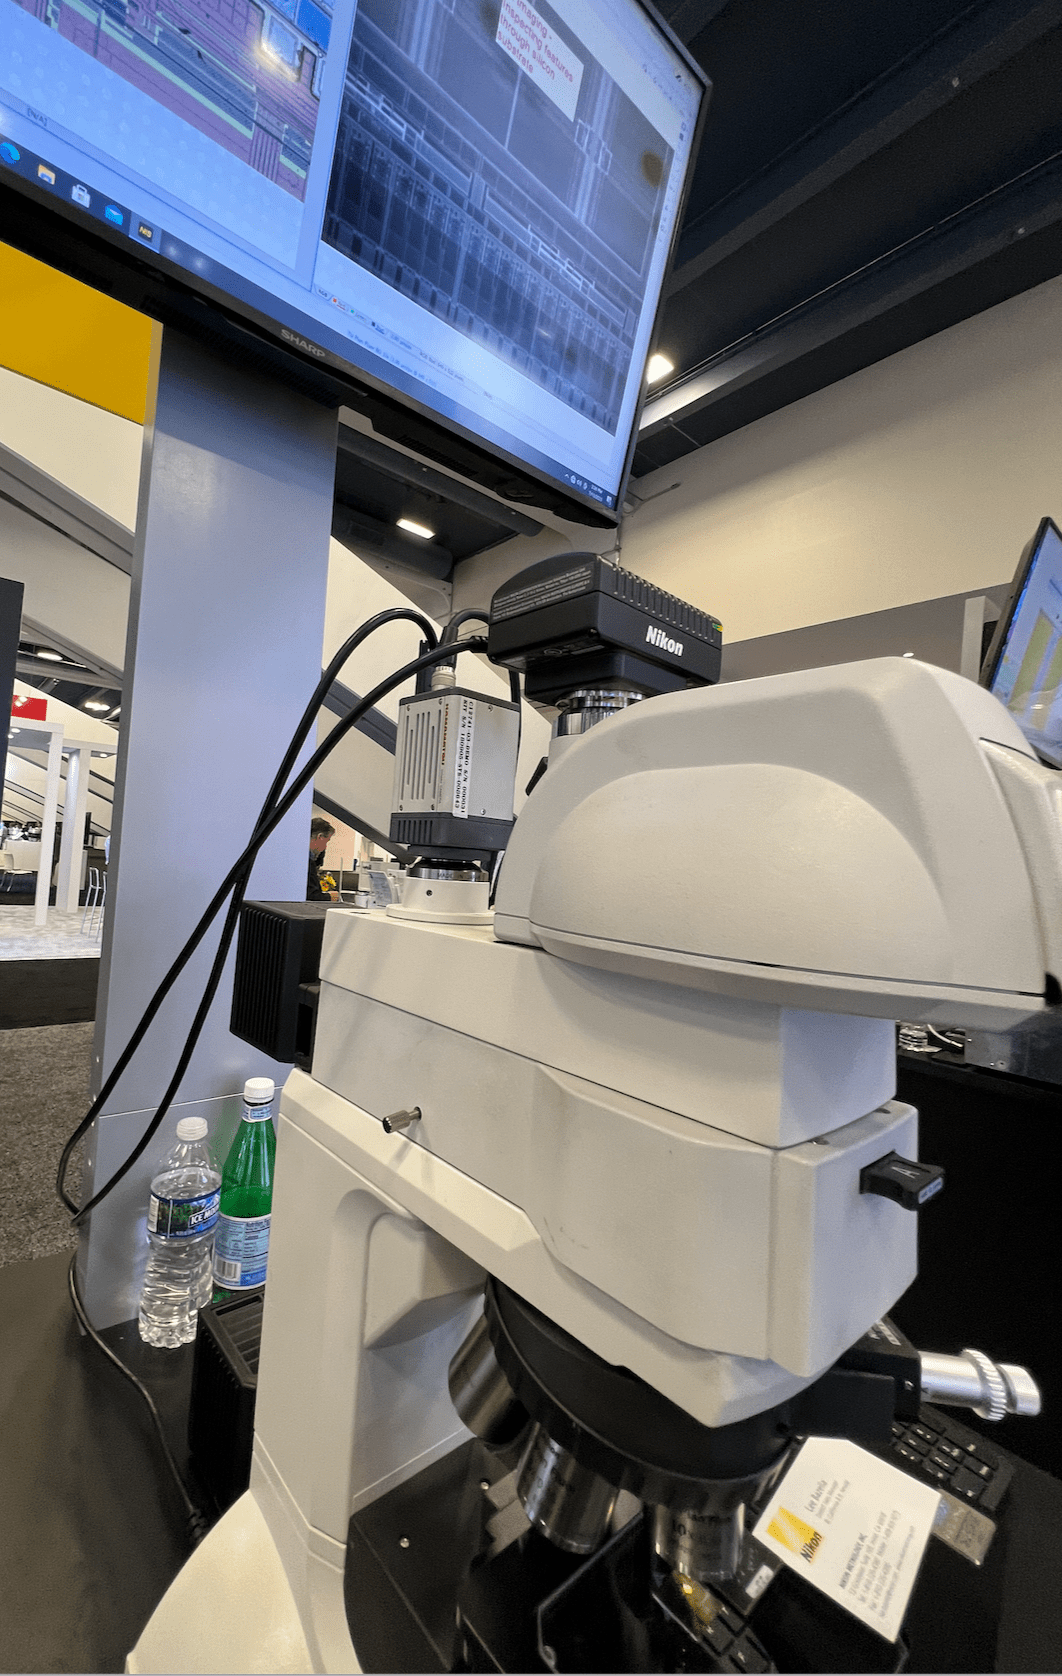 Камера Nikon, прикрепленная к инфракрасной камере на микроскопе, позволяет видеть сквозь слои кремния на стенде Nikon на выставке Semicon West 2023. Источник: Semiconductor Engineering/Susan Rambo.